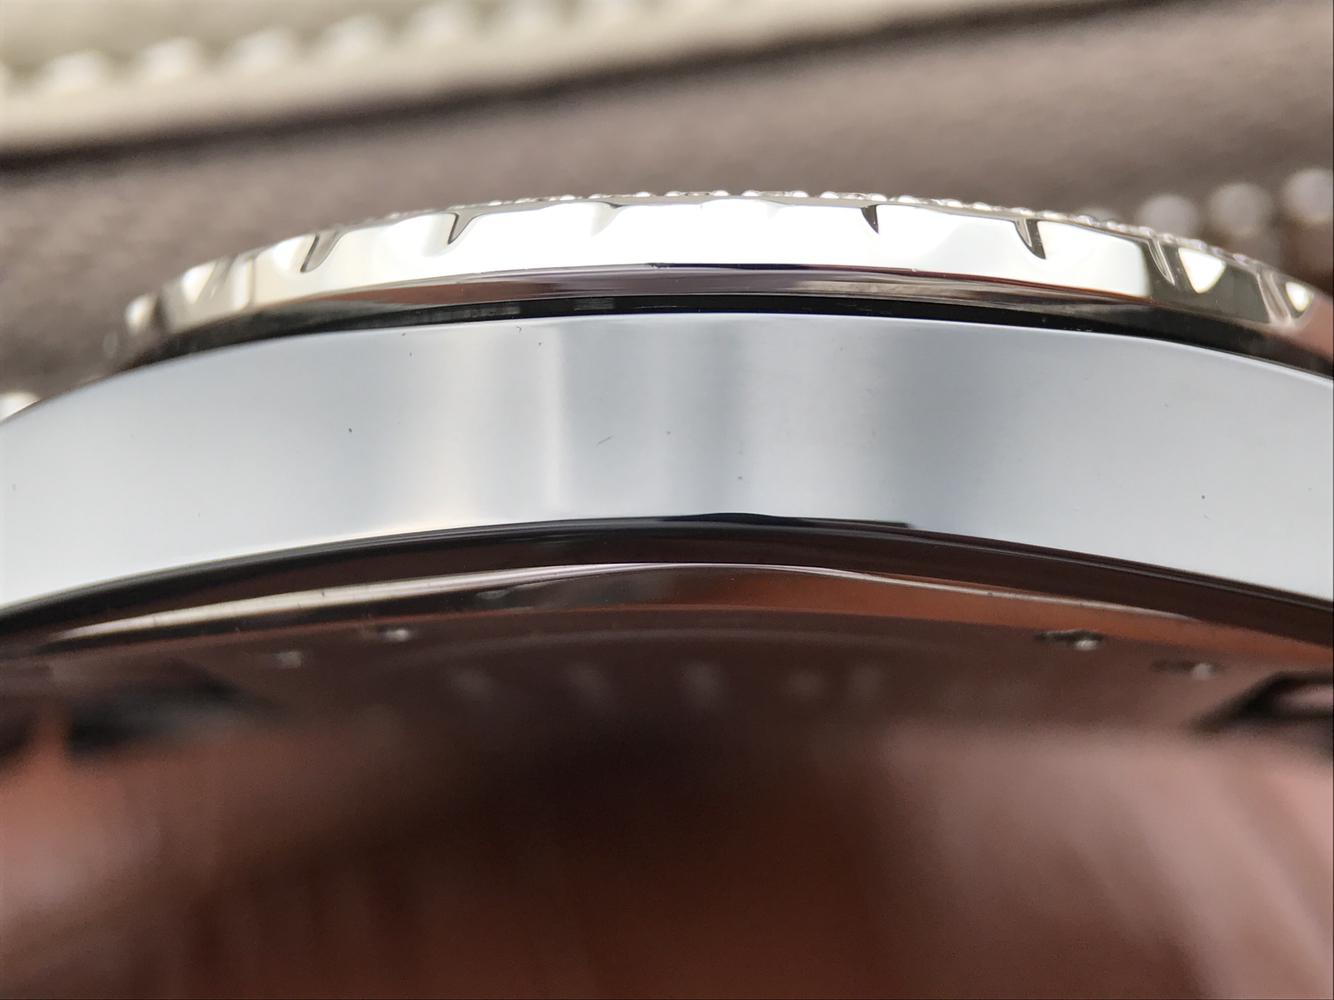 2022122608032210 - 香奈兒手錶仿款值得購買嗎 香奈兒J12進口韓國陶瓷錶￥2880